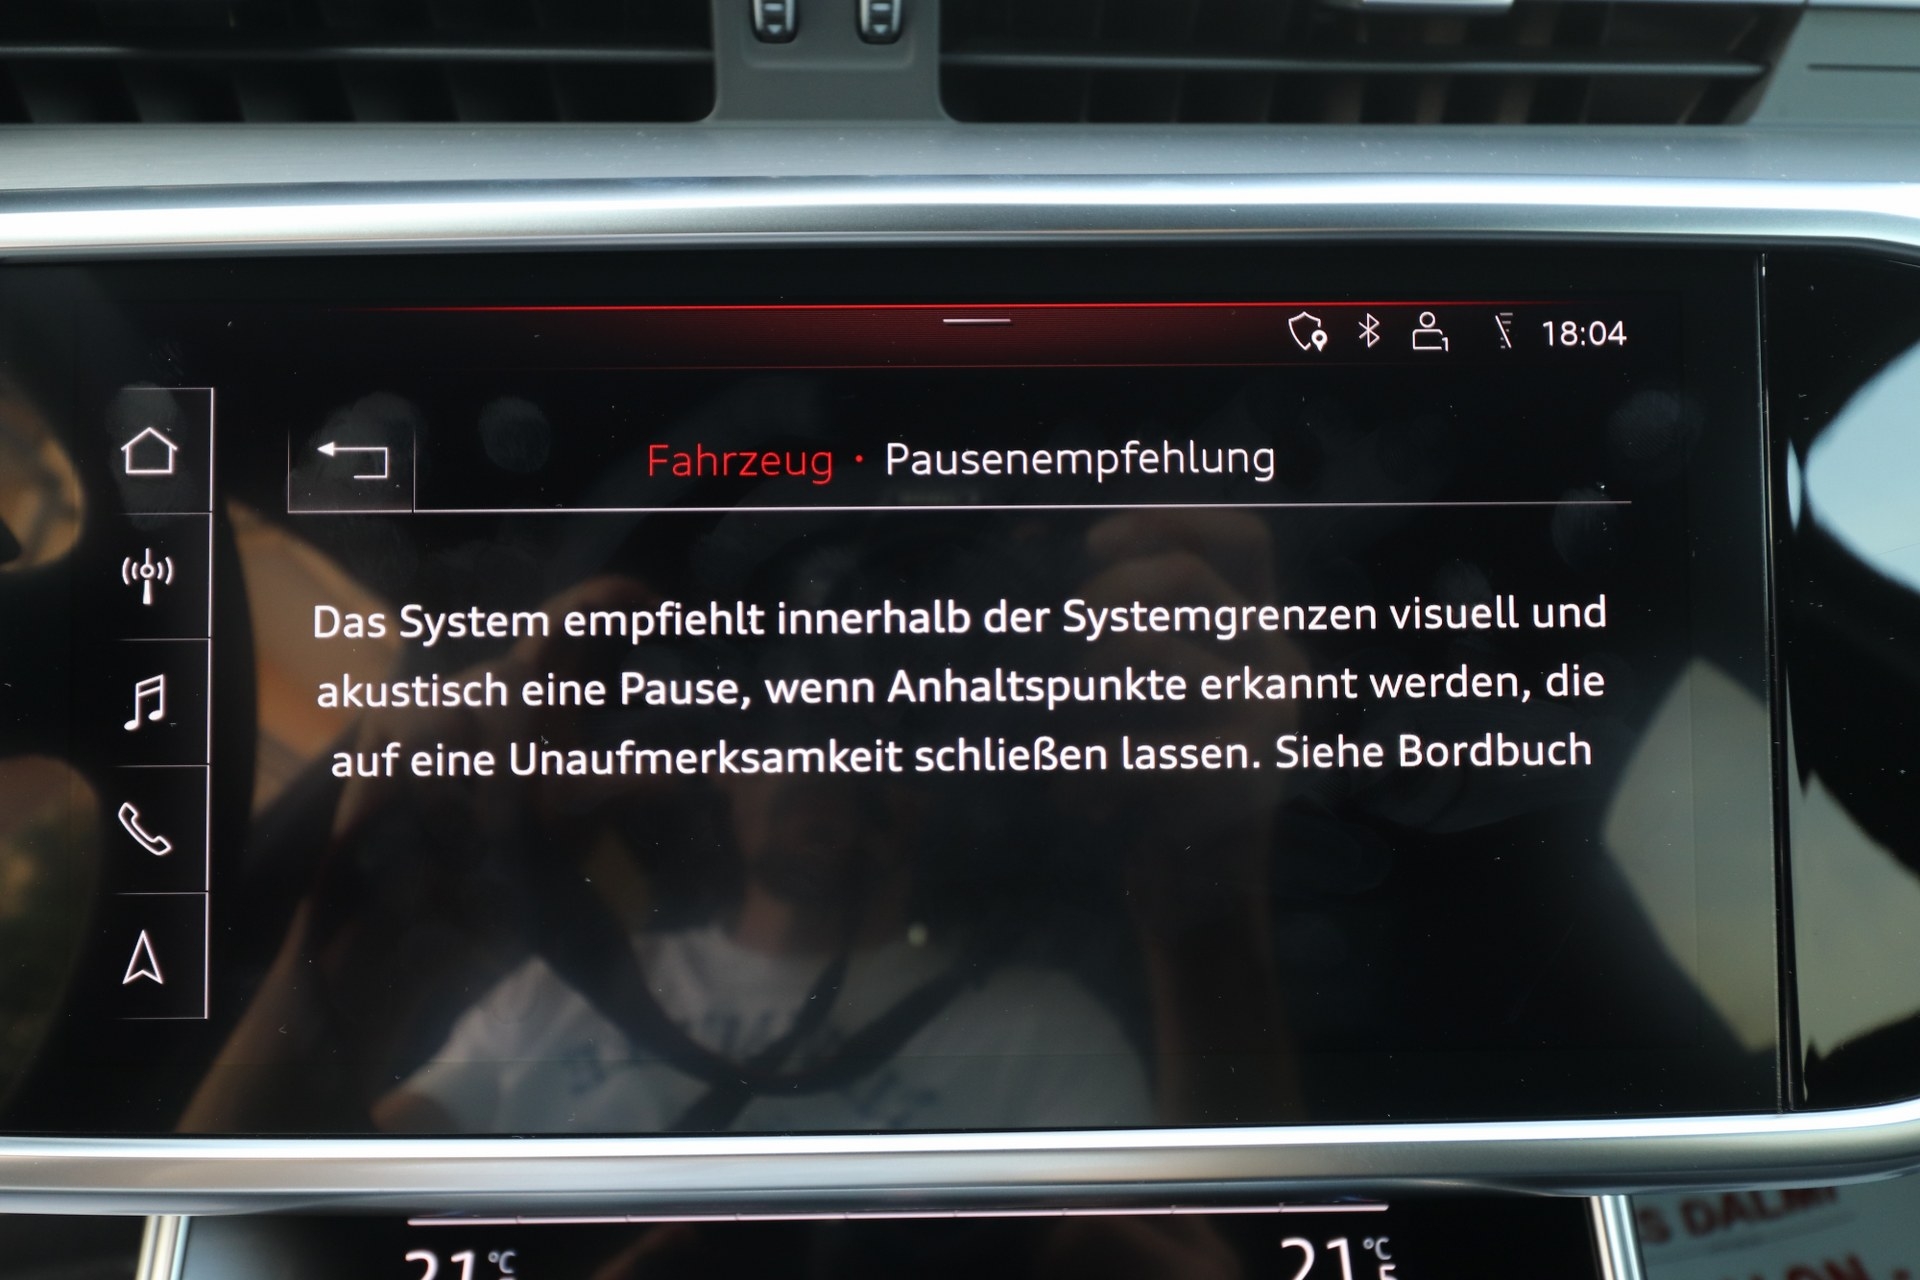 Audi A6 50 TDI Quattro Tiptronik 3xS-Line Sport Plus Black Edition HD MATRIX Full-LED VIRTUAL Kamera 360° ACC-System 286 KS MAX-VOLL -New Modell 2020-